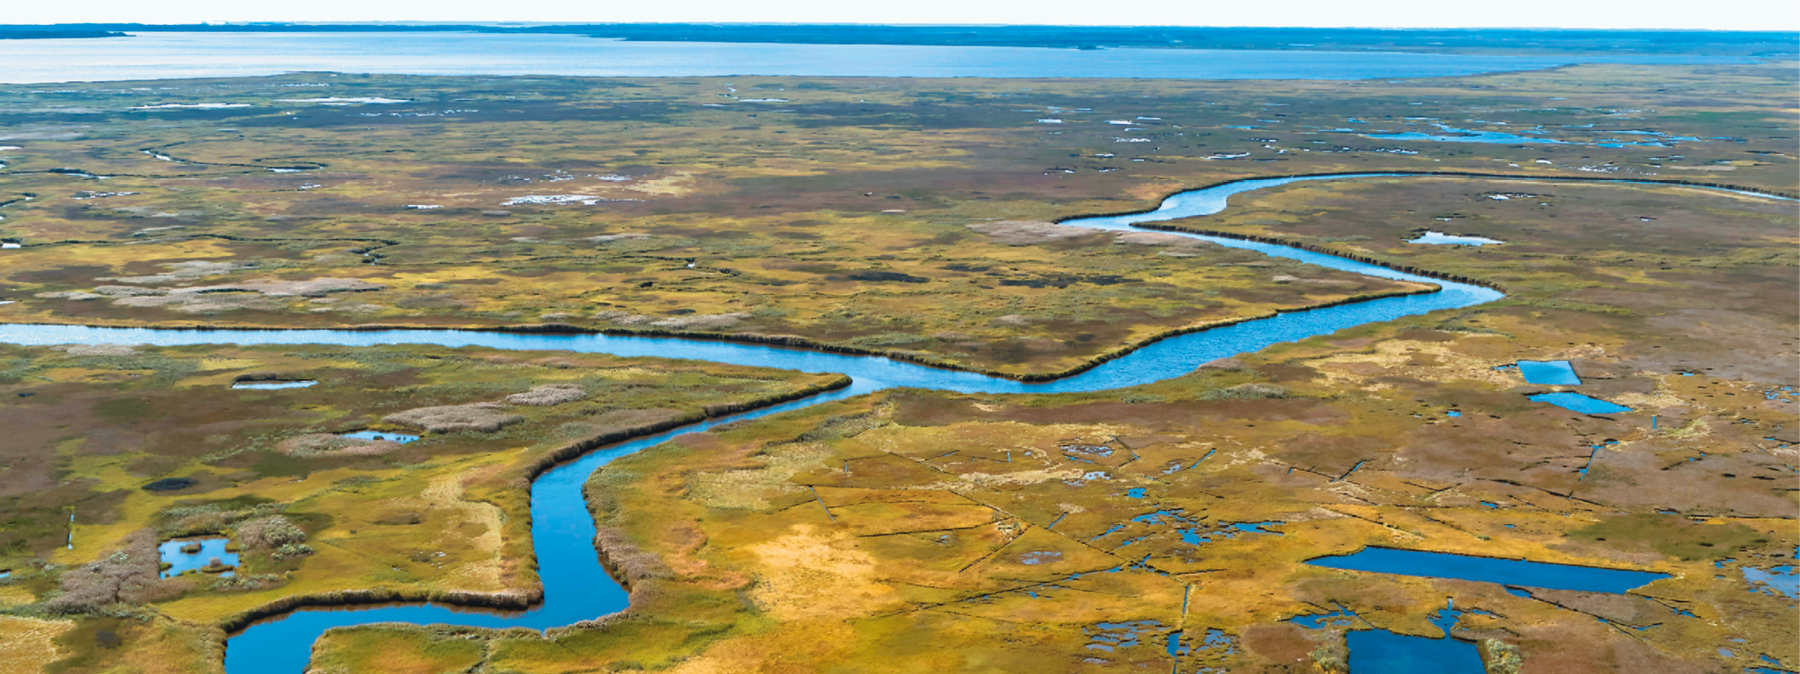 Fotografia. Vista aérea de uma região com vegetação baixa em tons amarelados e esverdeados, entrecortada por um rio de águas azuis que refletem a cor do céu. Alguns pequenos lagos se formam nas várzeas. Ao fundo, o mar.